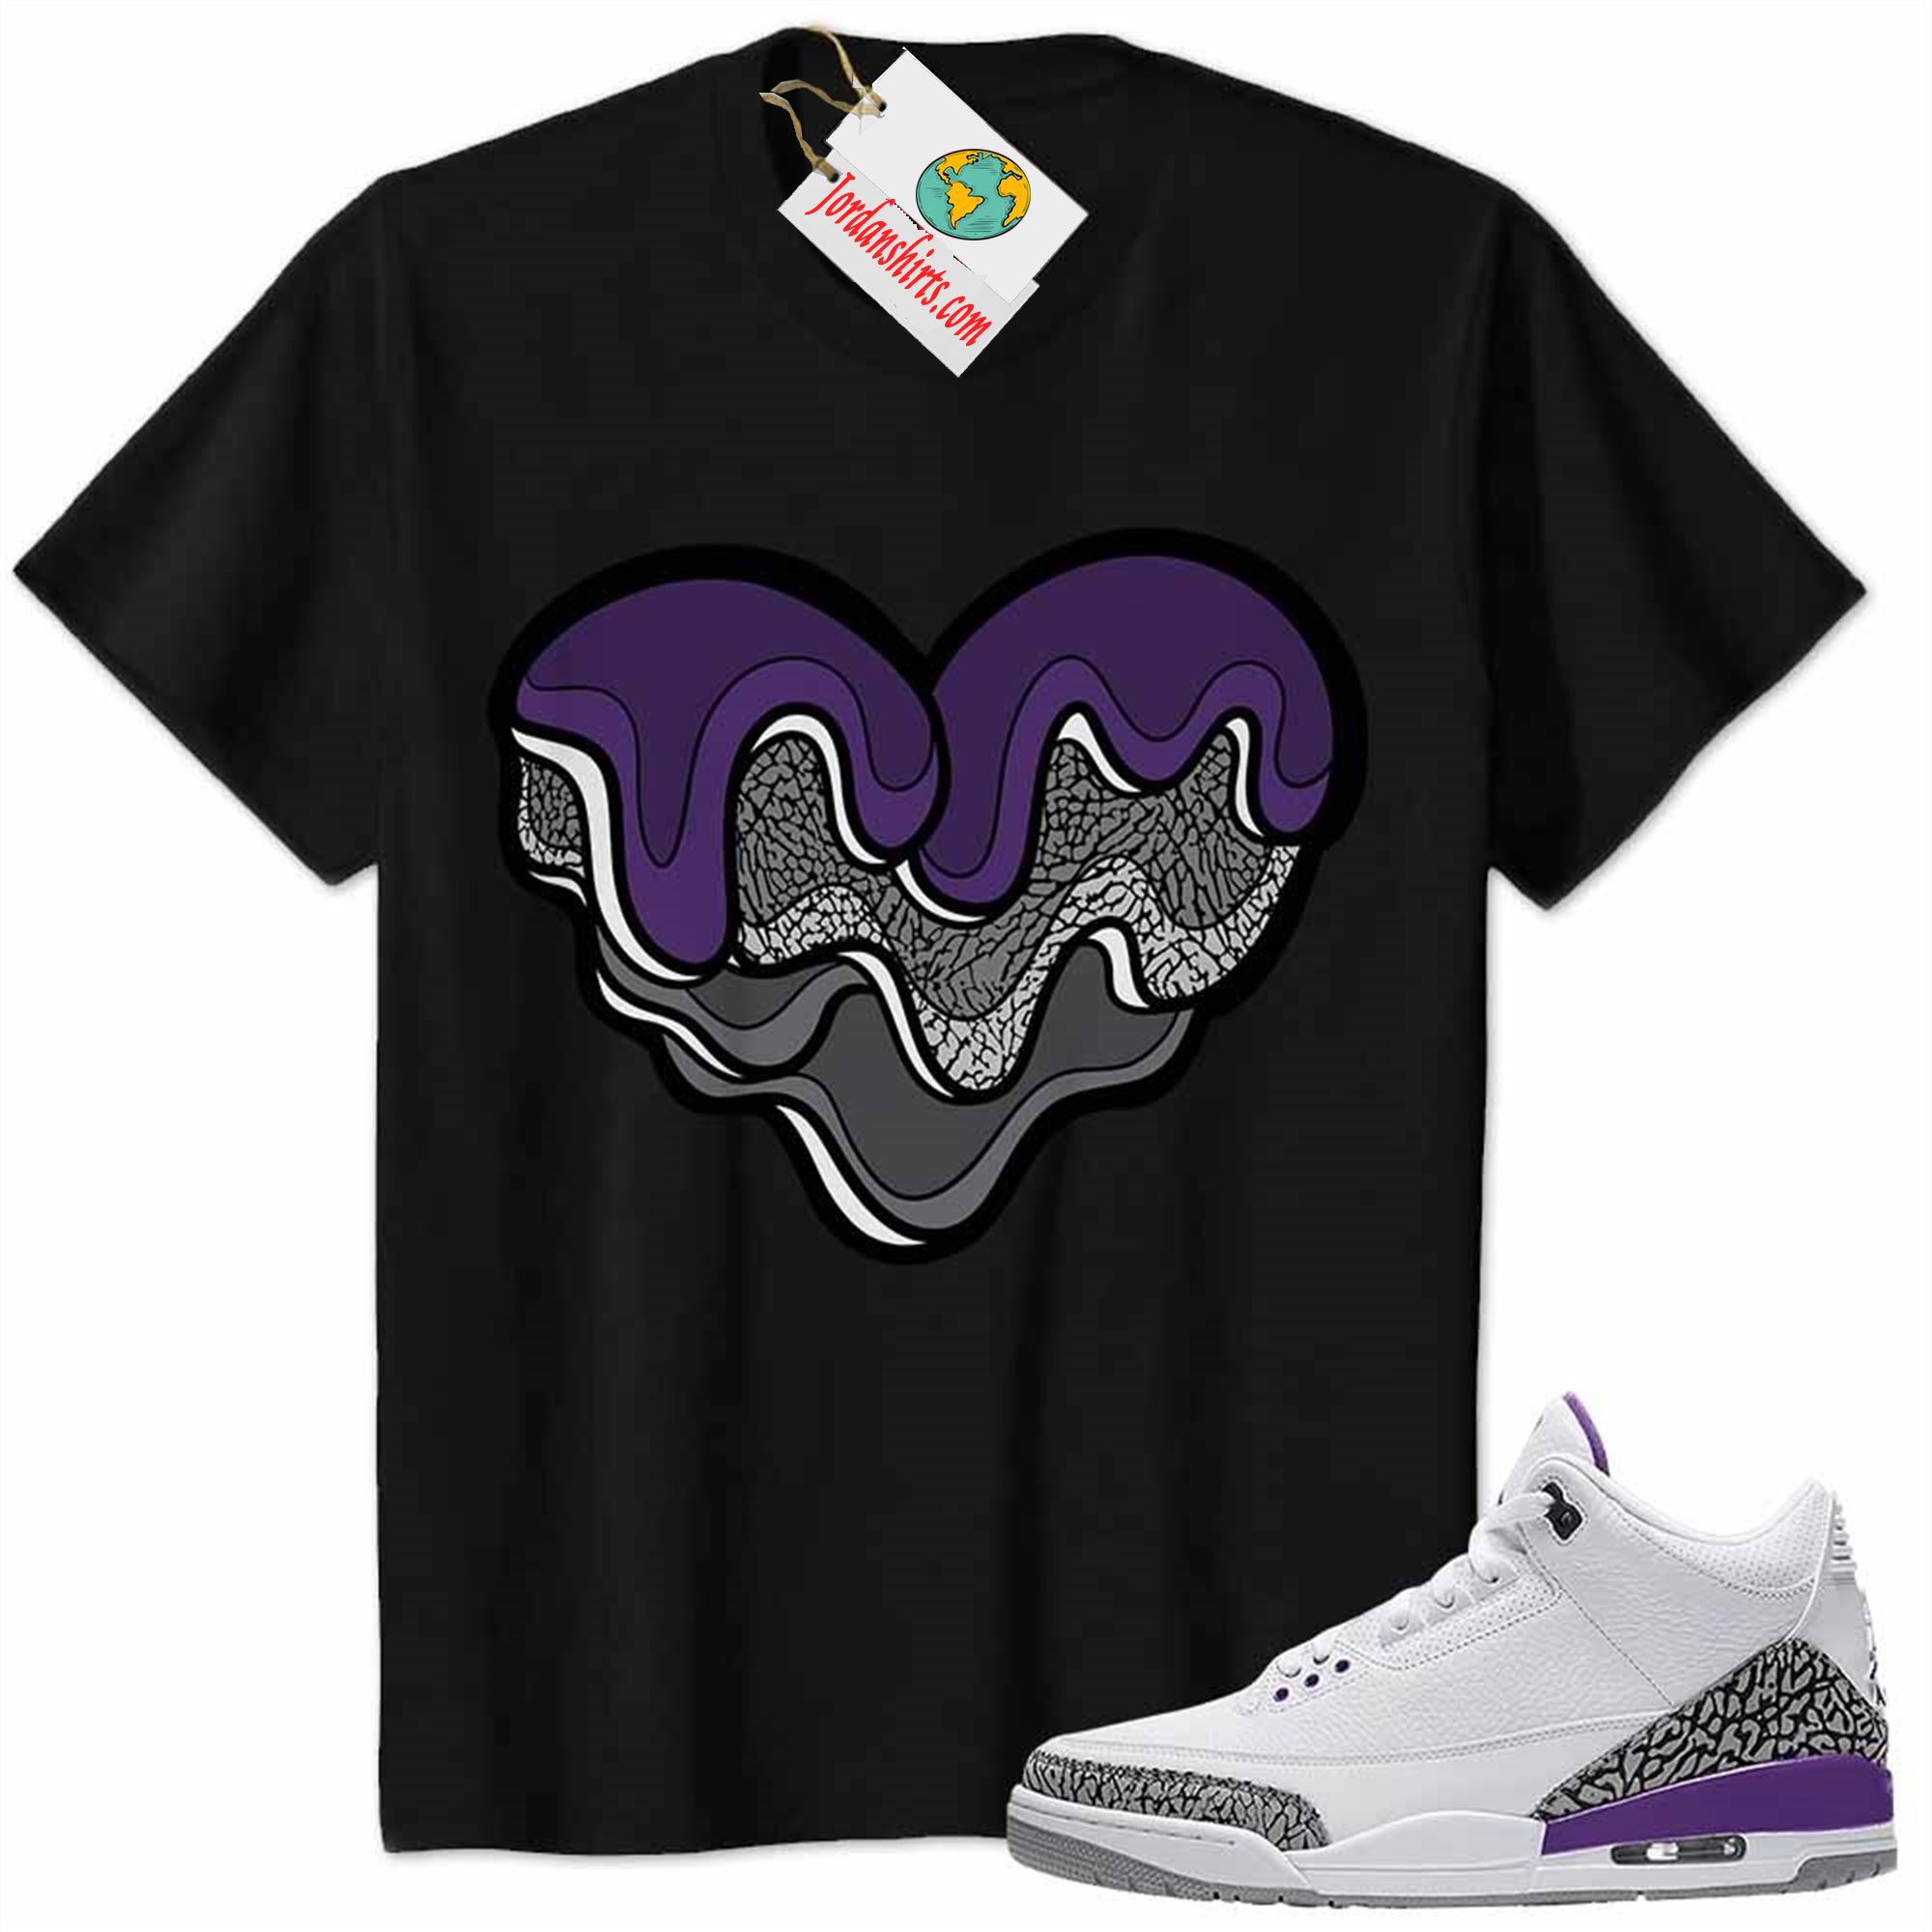 Jordan 3 Shirt, Melt Dripping Heart Black Air Jordan 3 Wmns Dark Iris Violet Ore 3s Size Up To 5xl